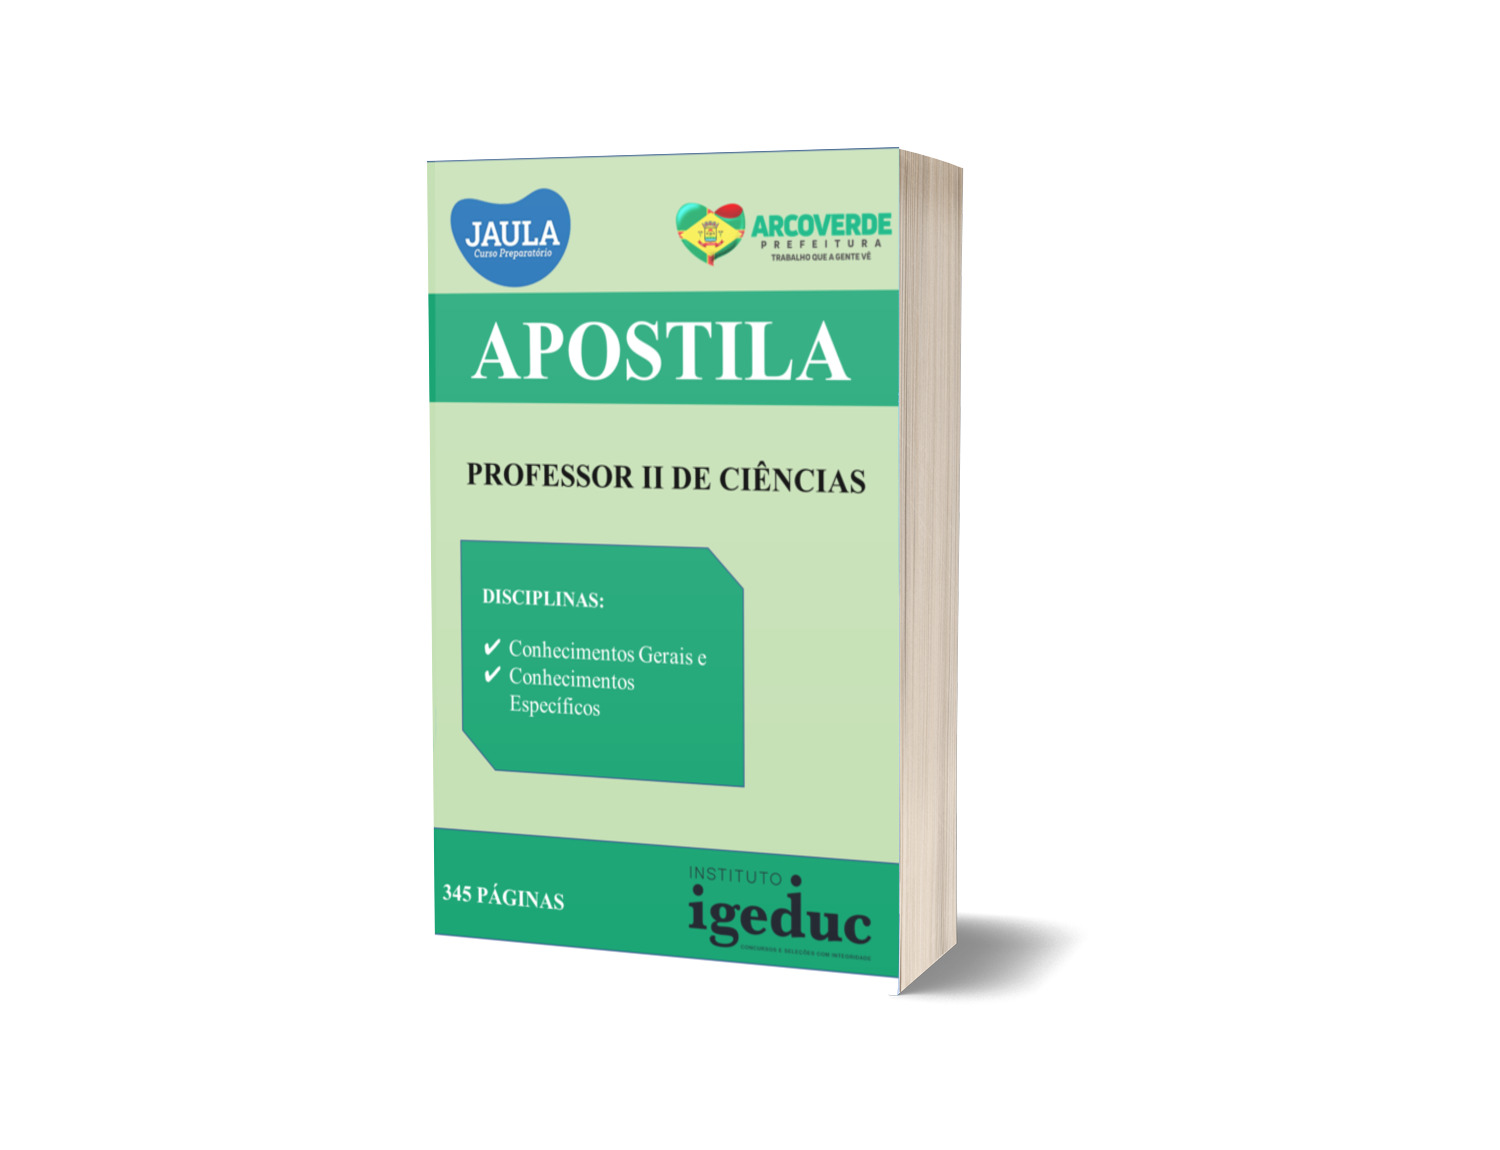 APOSTILA/ PROFESSOR II DE CIÊNCIAS/ ARCOVERDE-PE